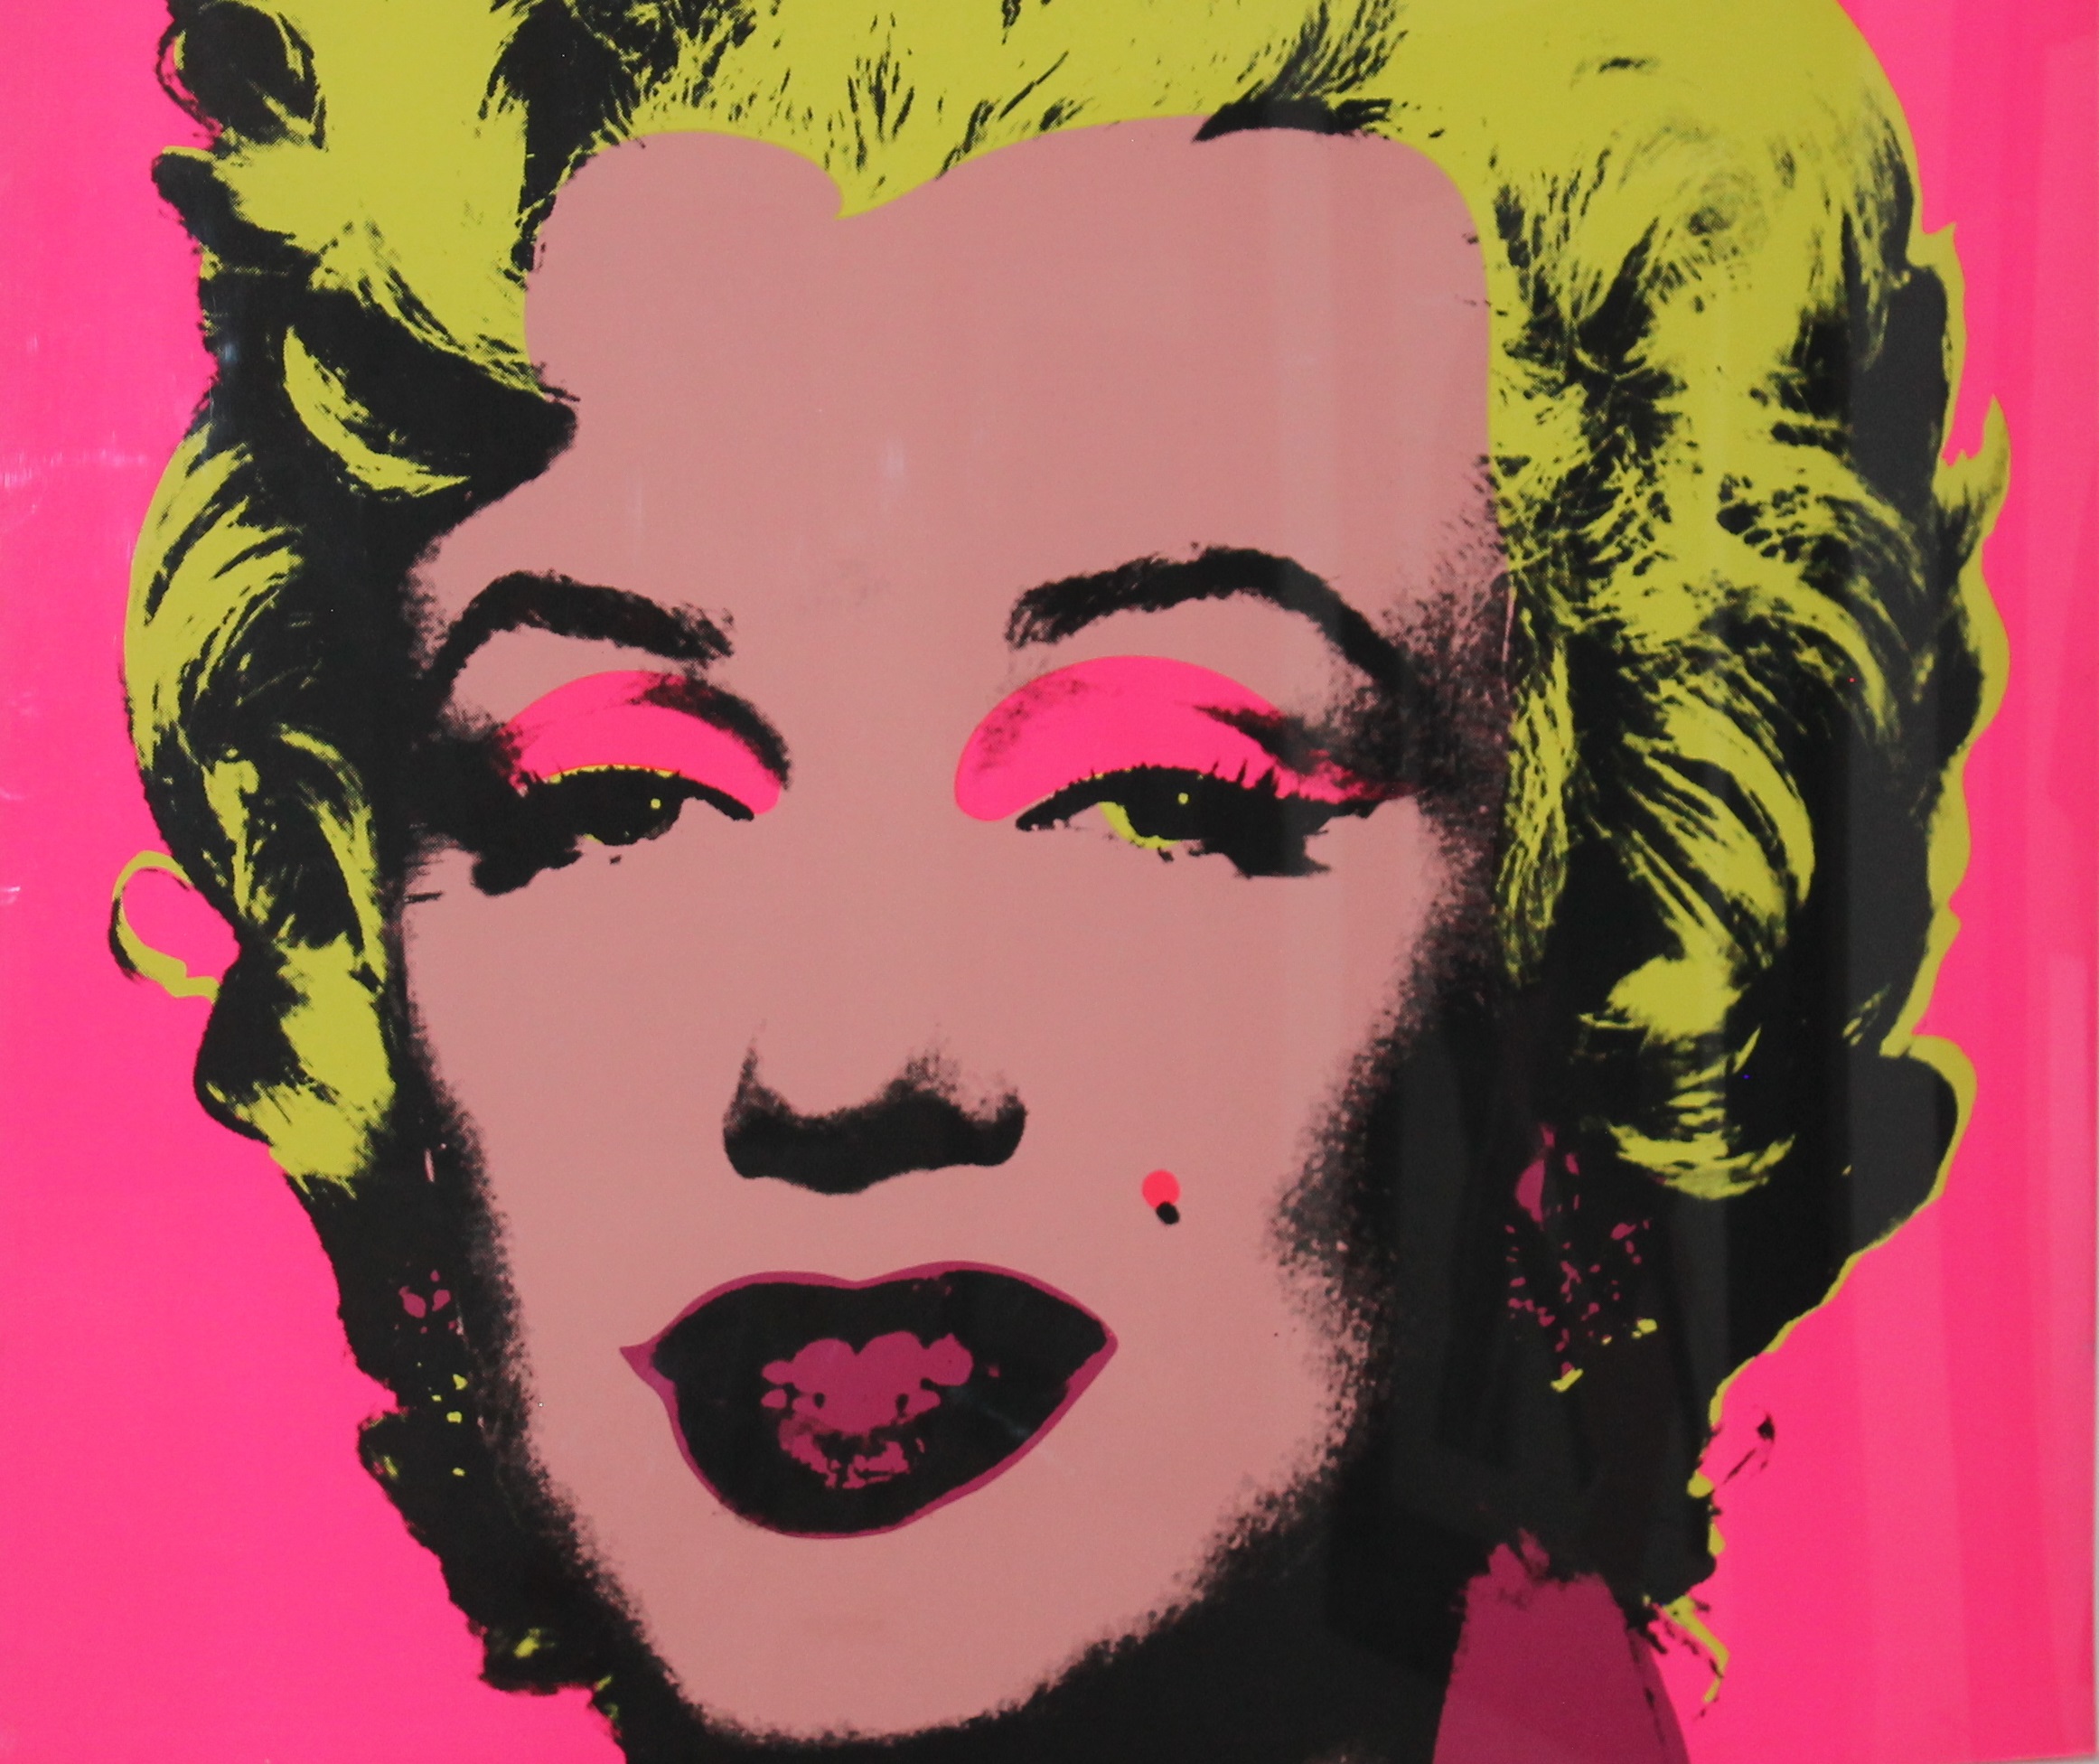 Celebrità, anonimato, fama: Andy Warhol e Banksy in mostra a Catania